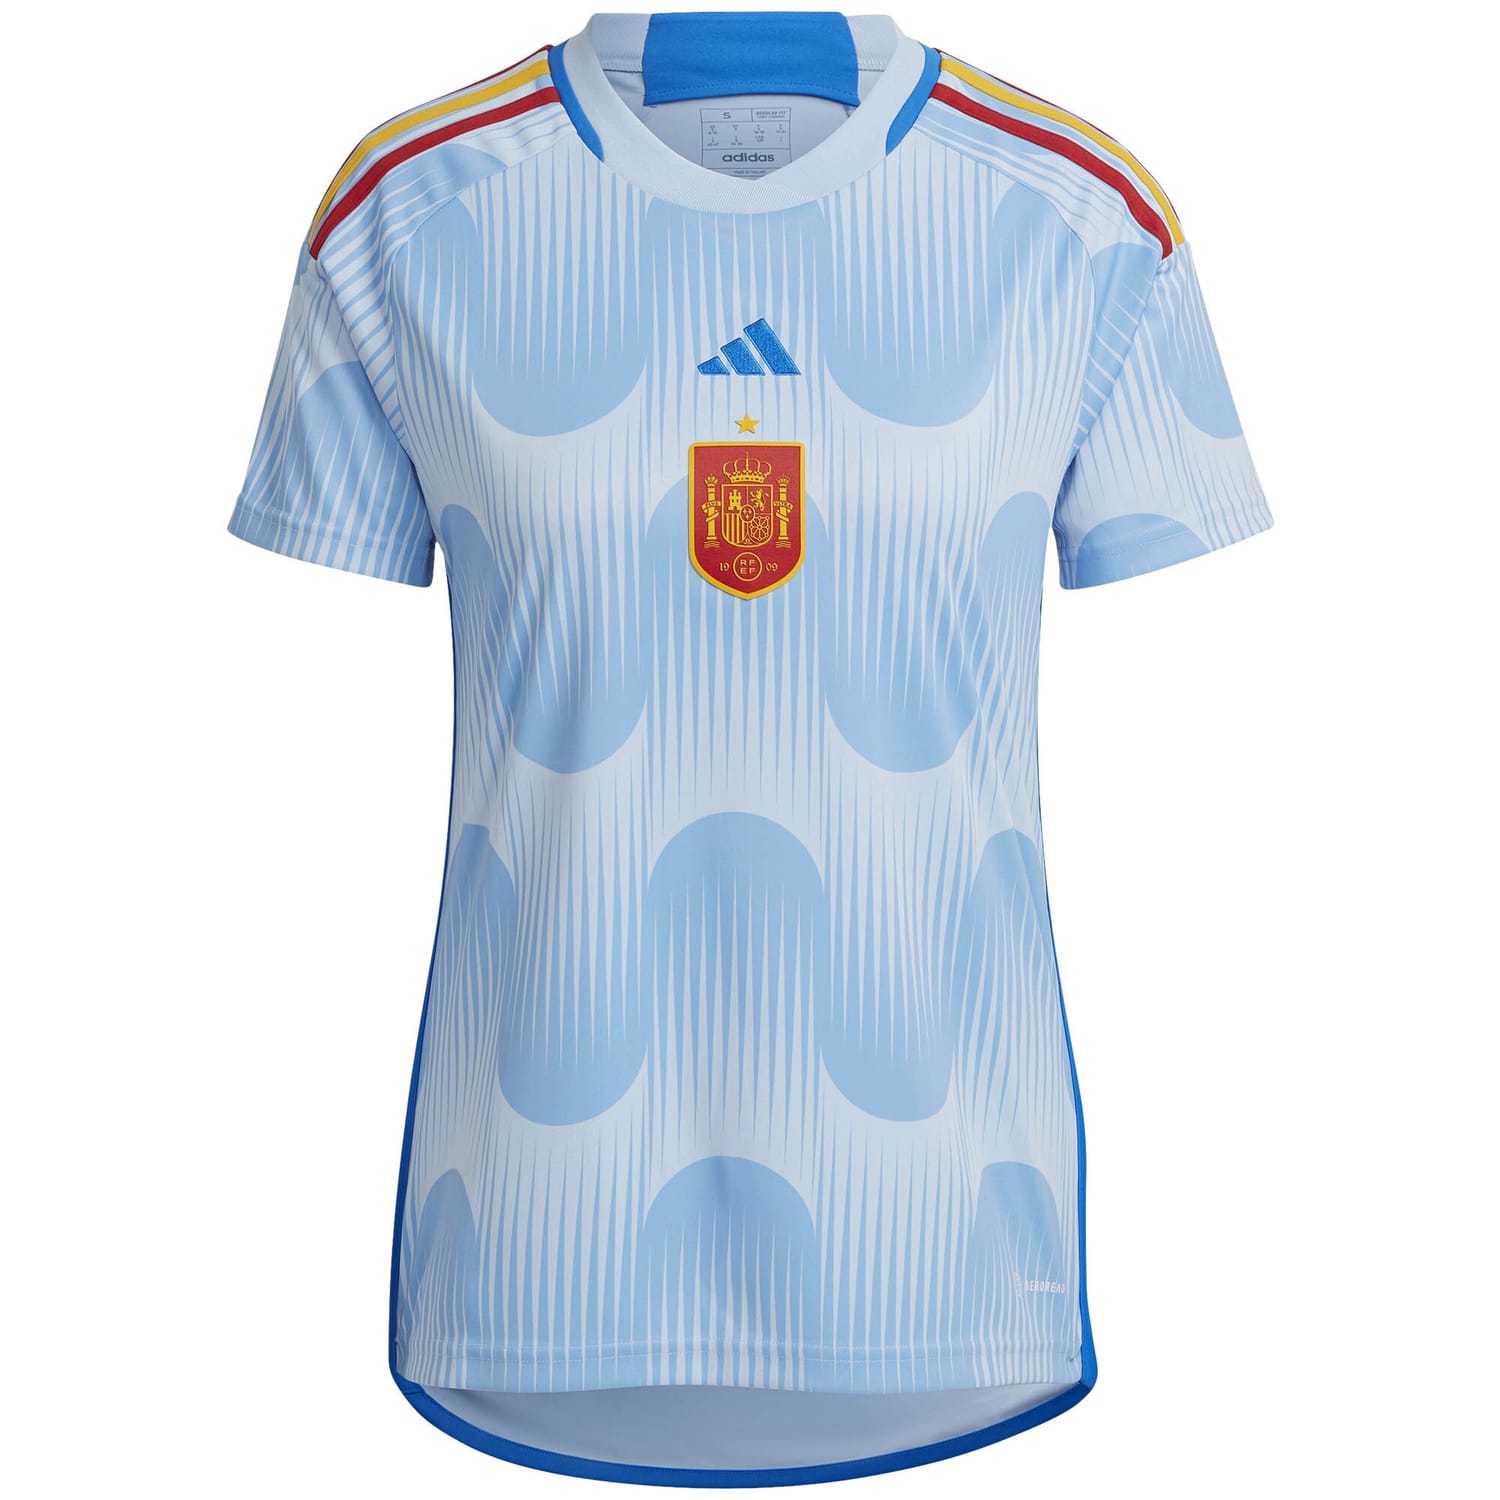 Spain National Team Away Jersey Shirt 2022 for Women